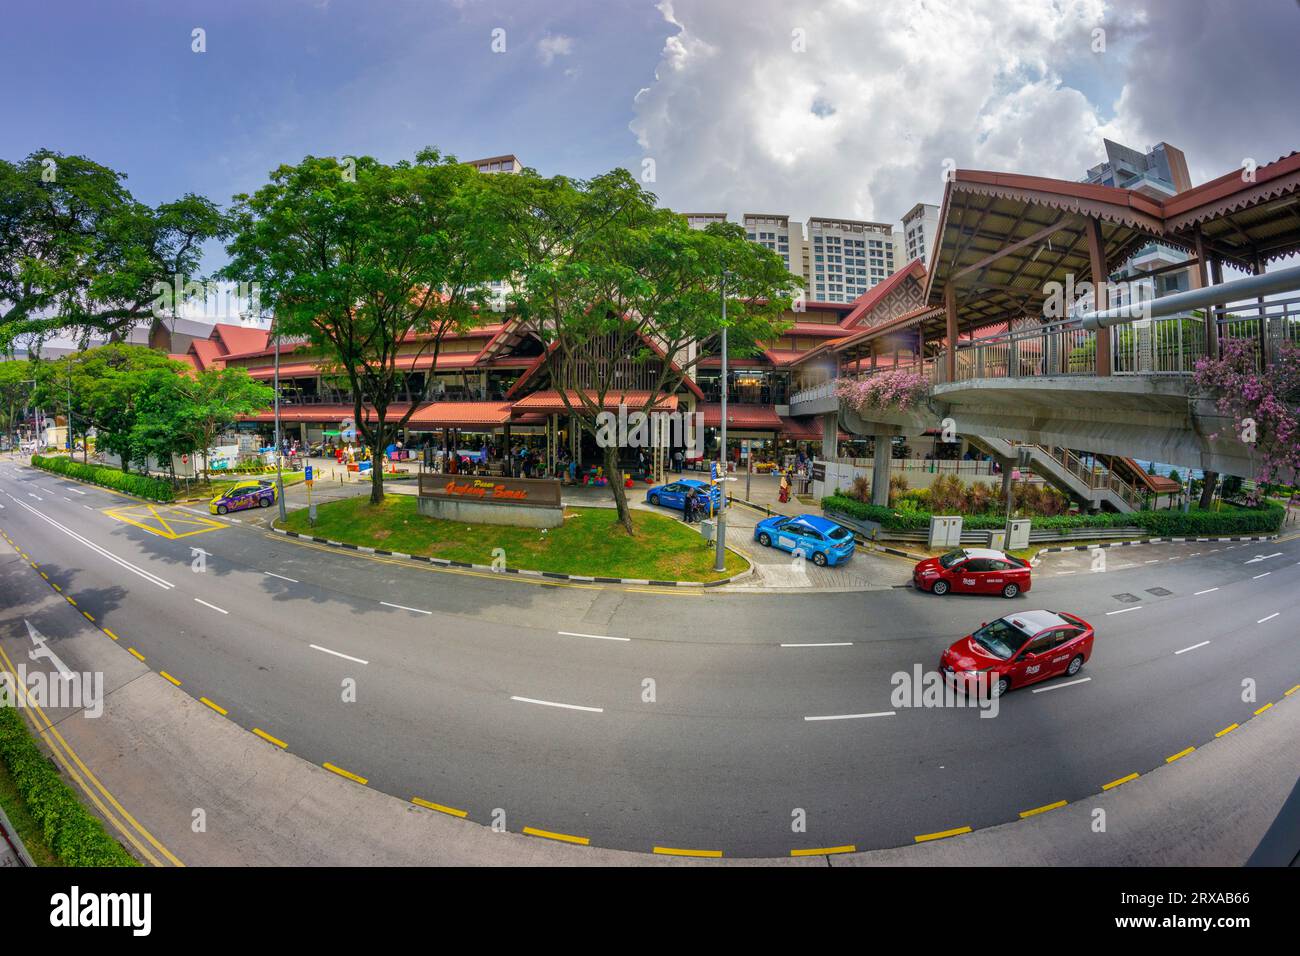 Vue de l'extérieur des marchés de Geylang serai. Singapour Banque D'Images